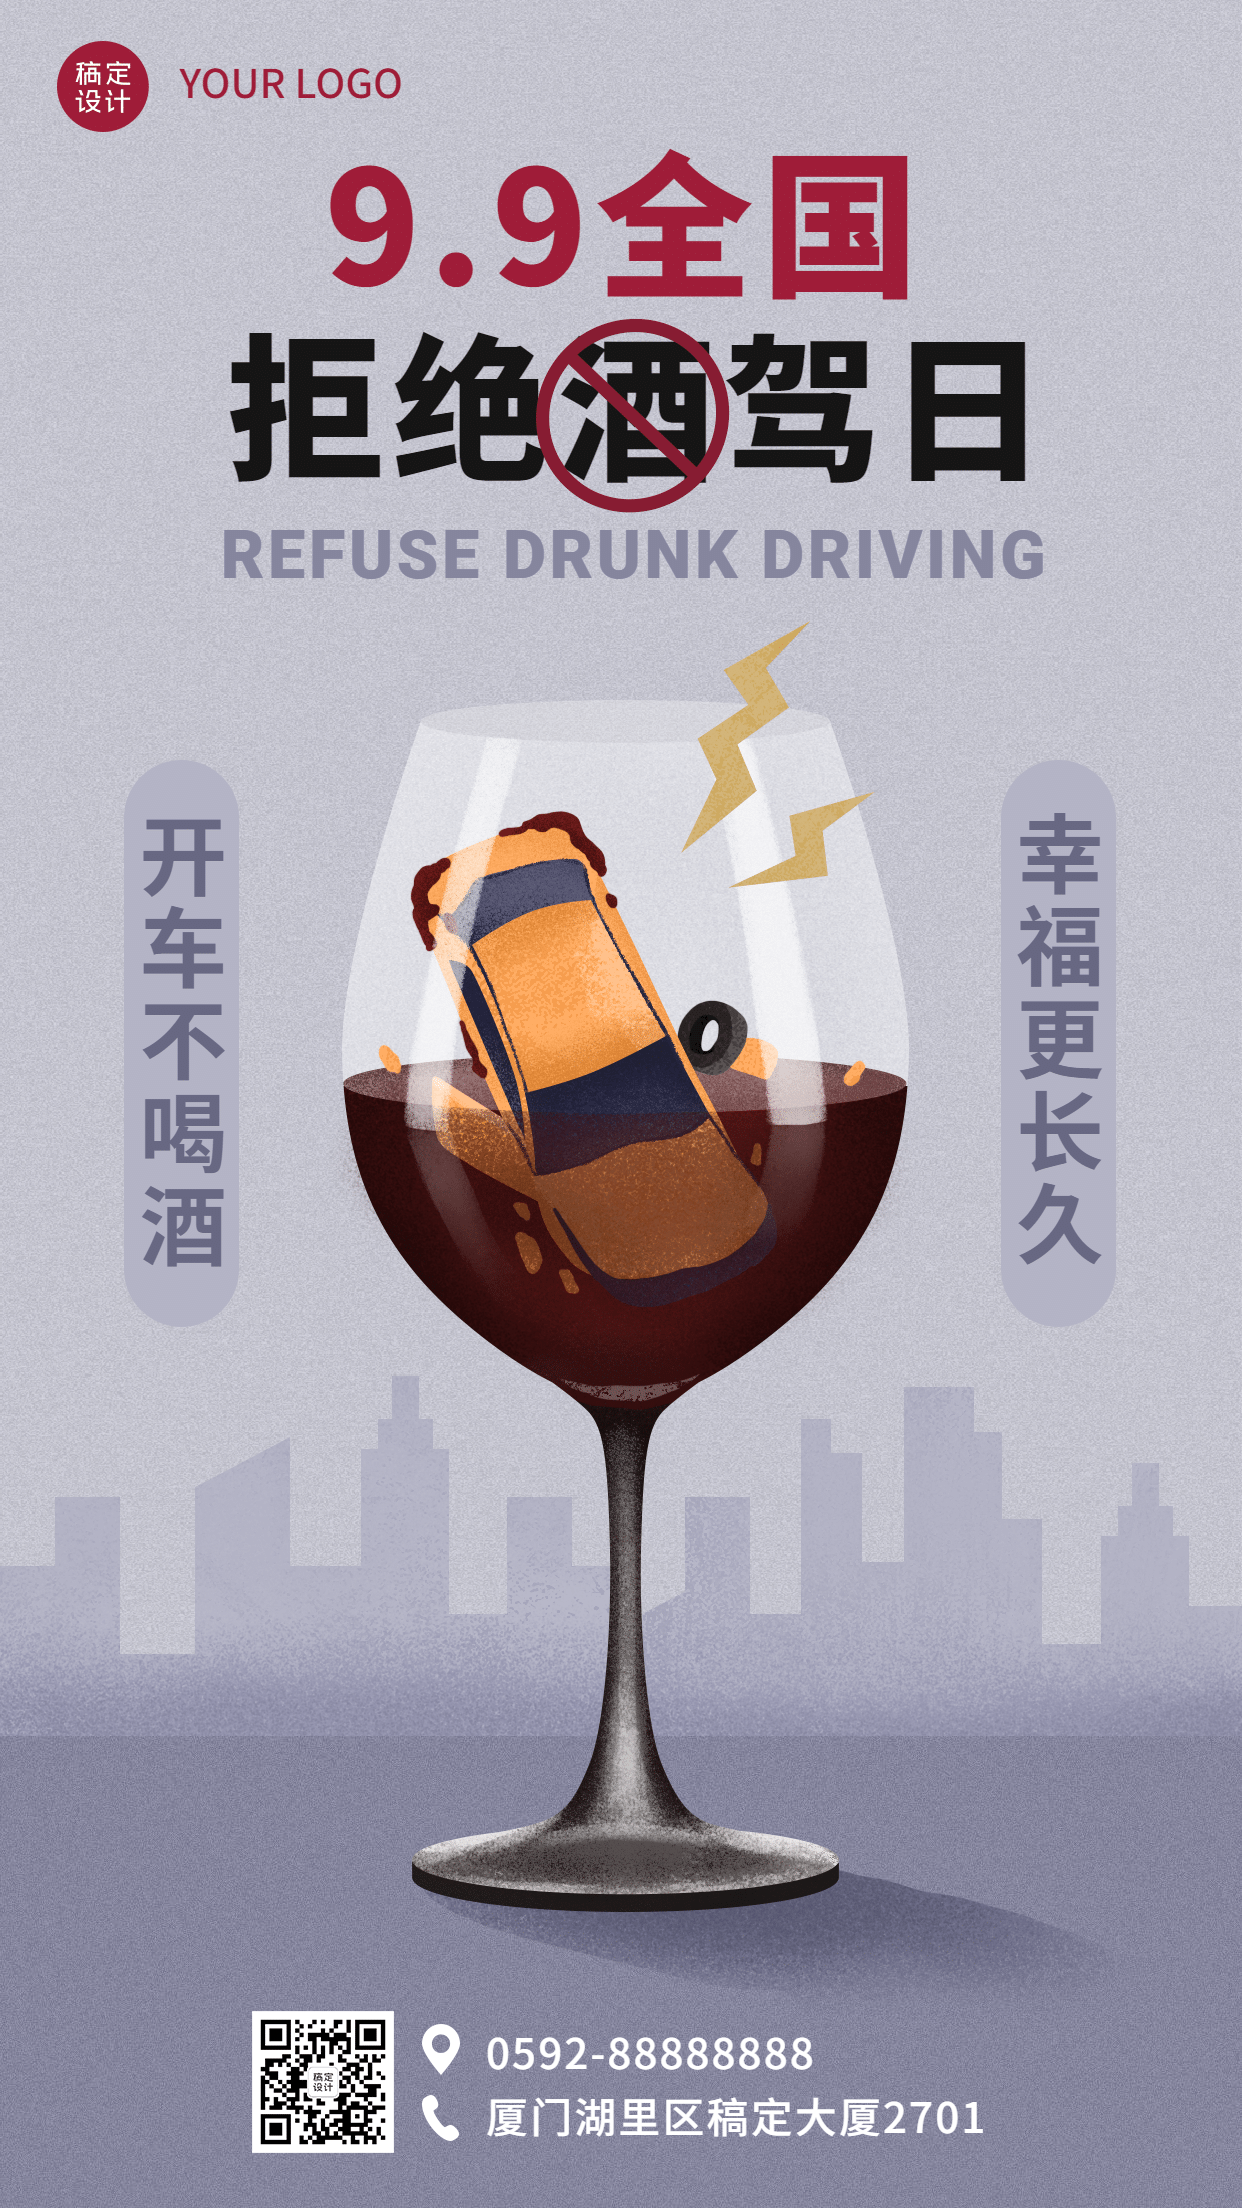 全国拒绝酒驾日交通安全宣传创意手绘手机海报预览效果